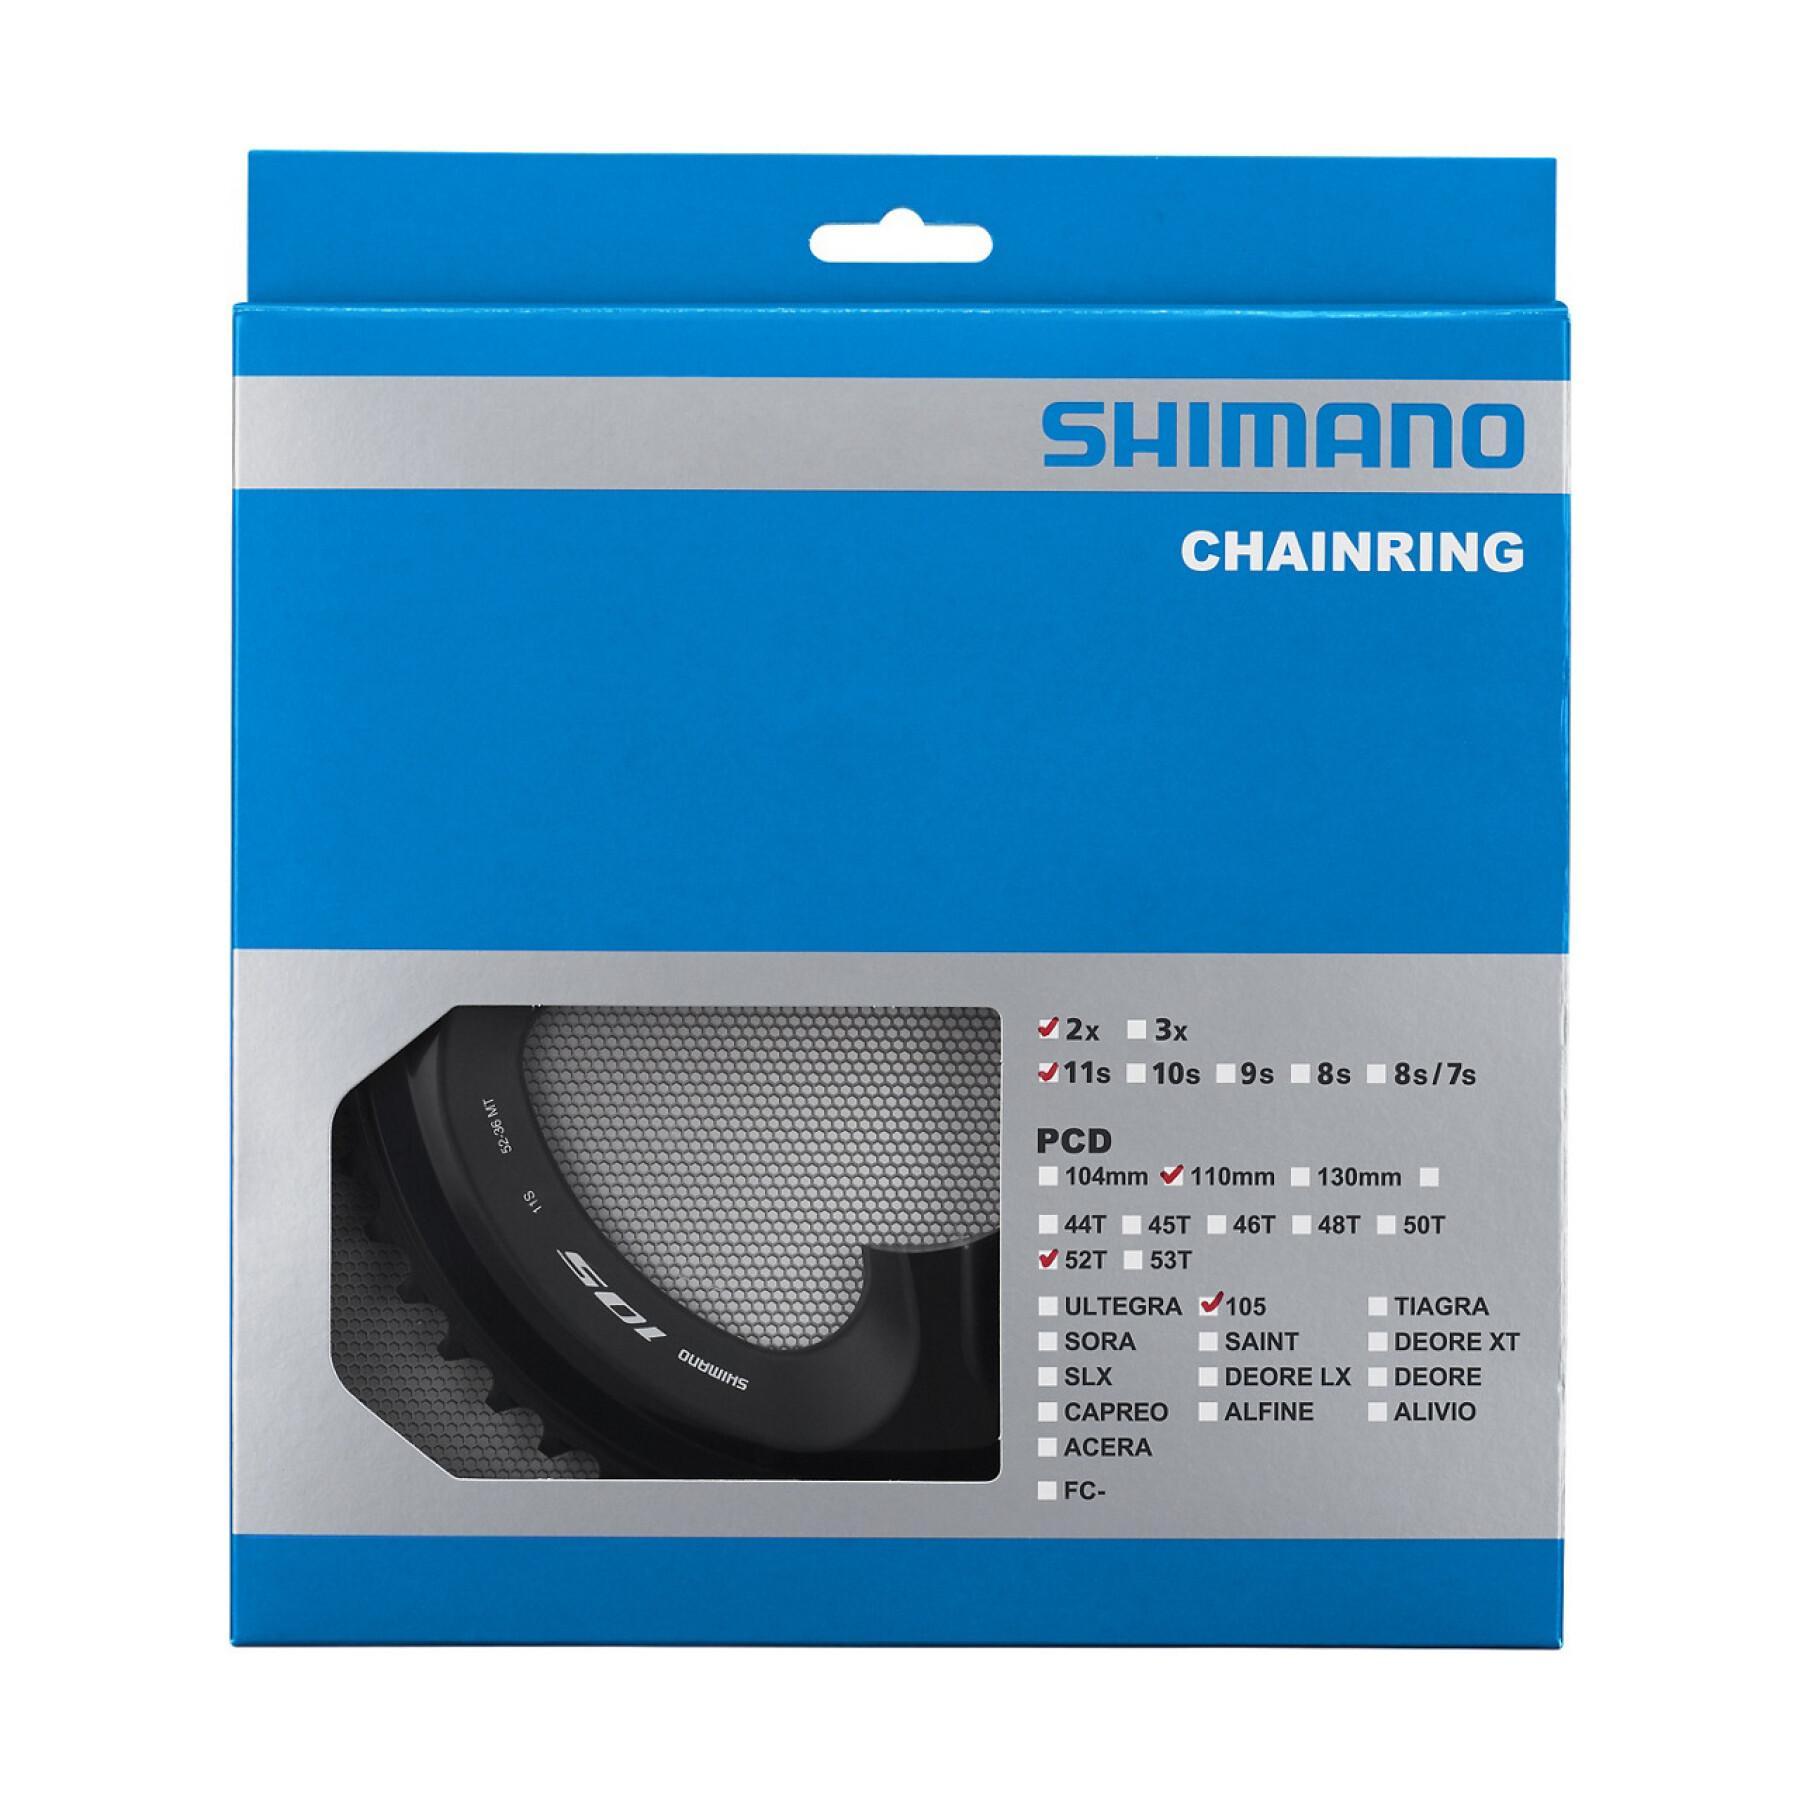 Tablett Shimano 105 FC-R7000